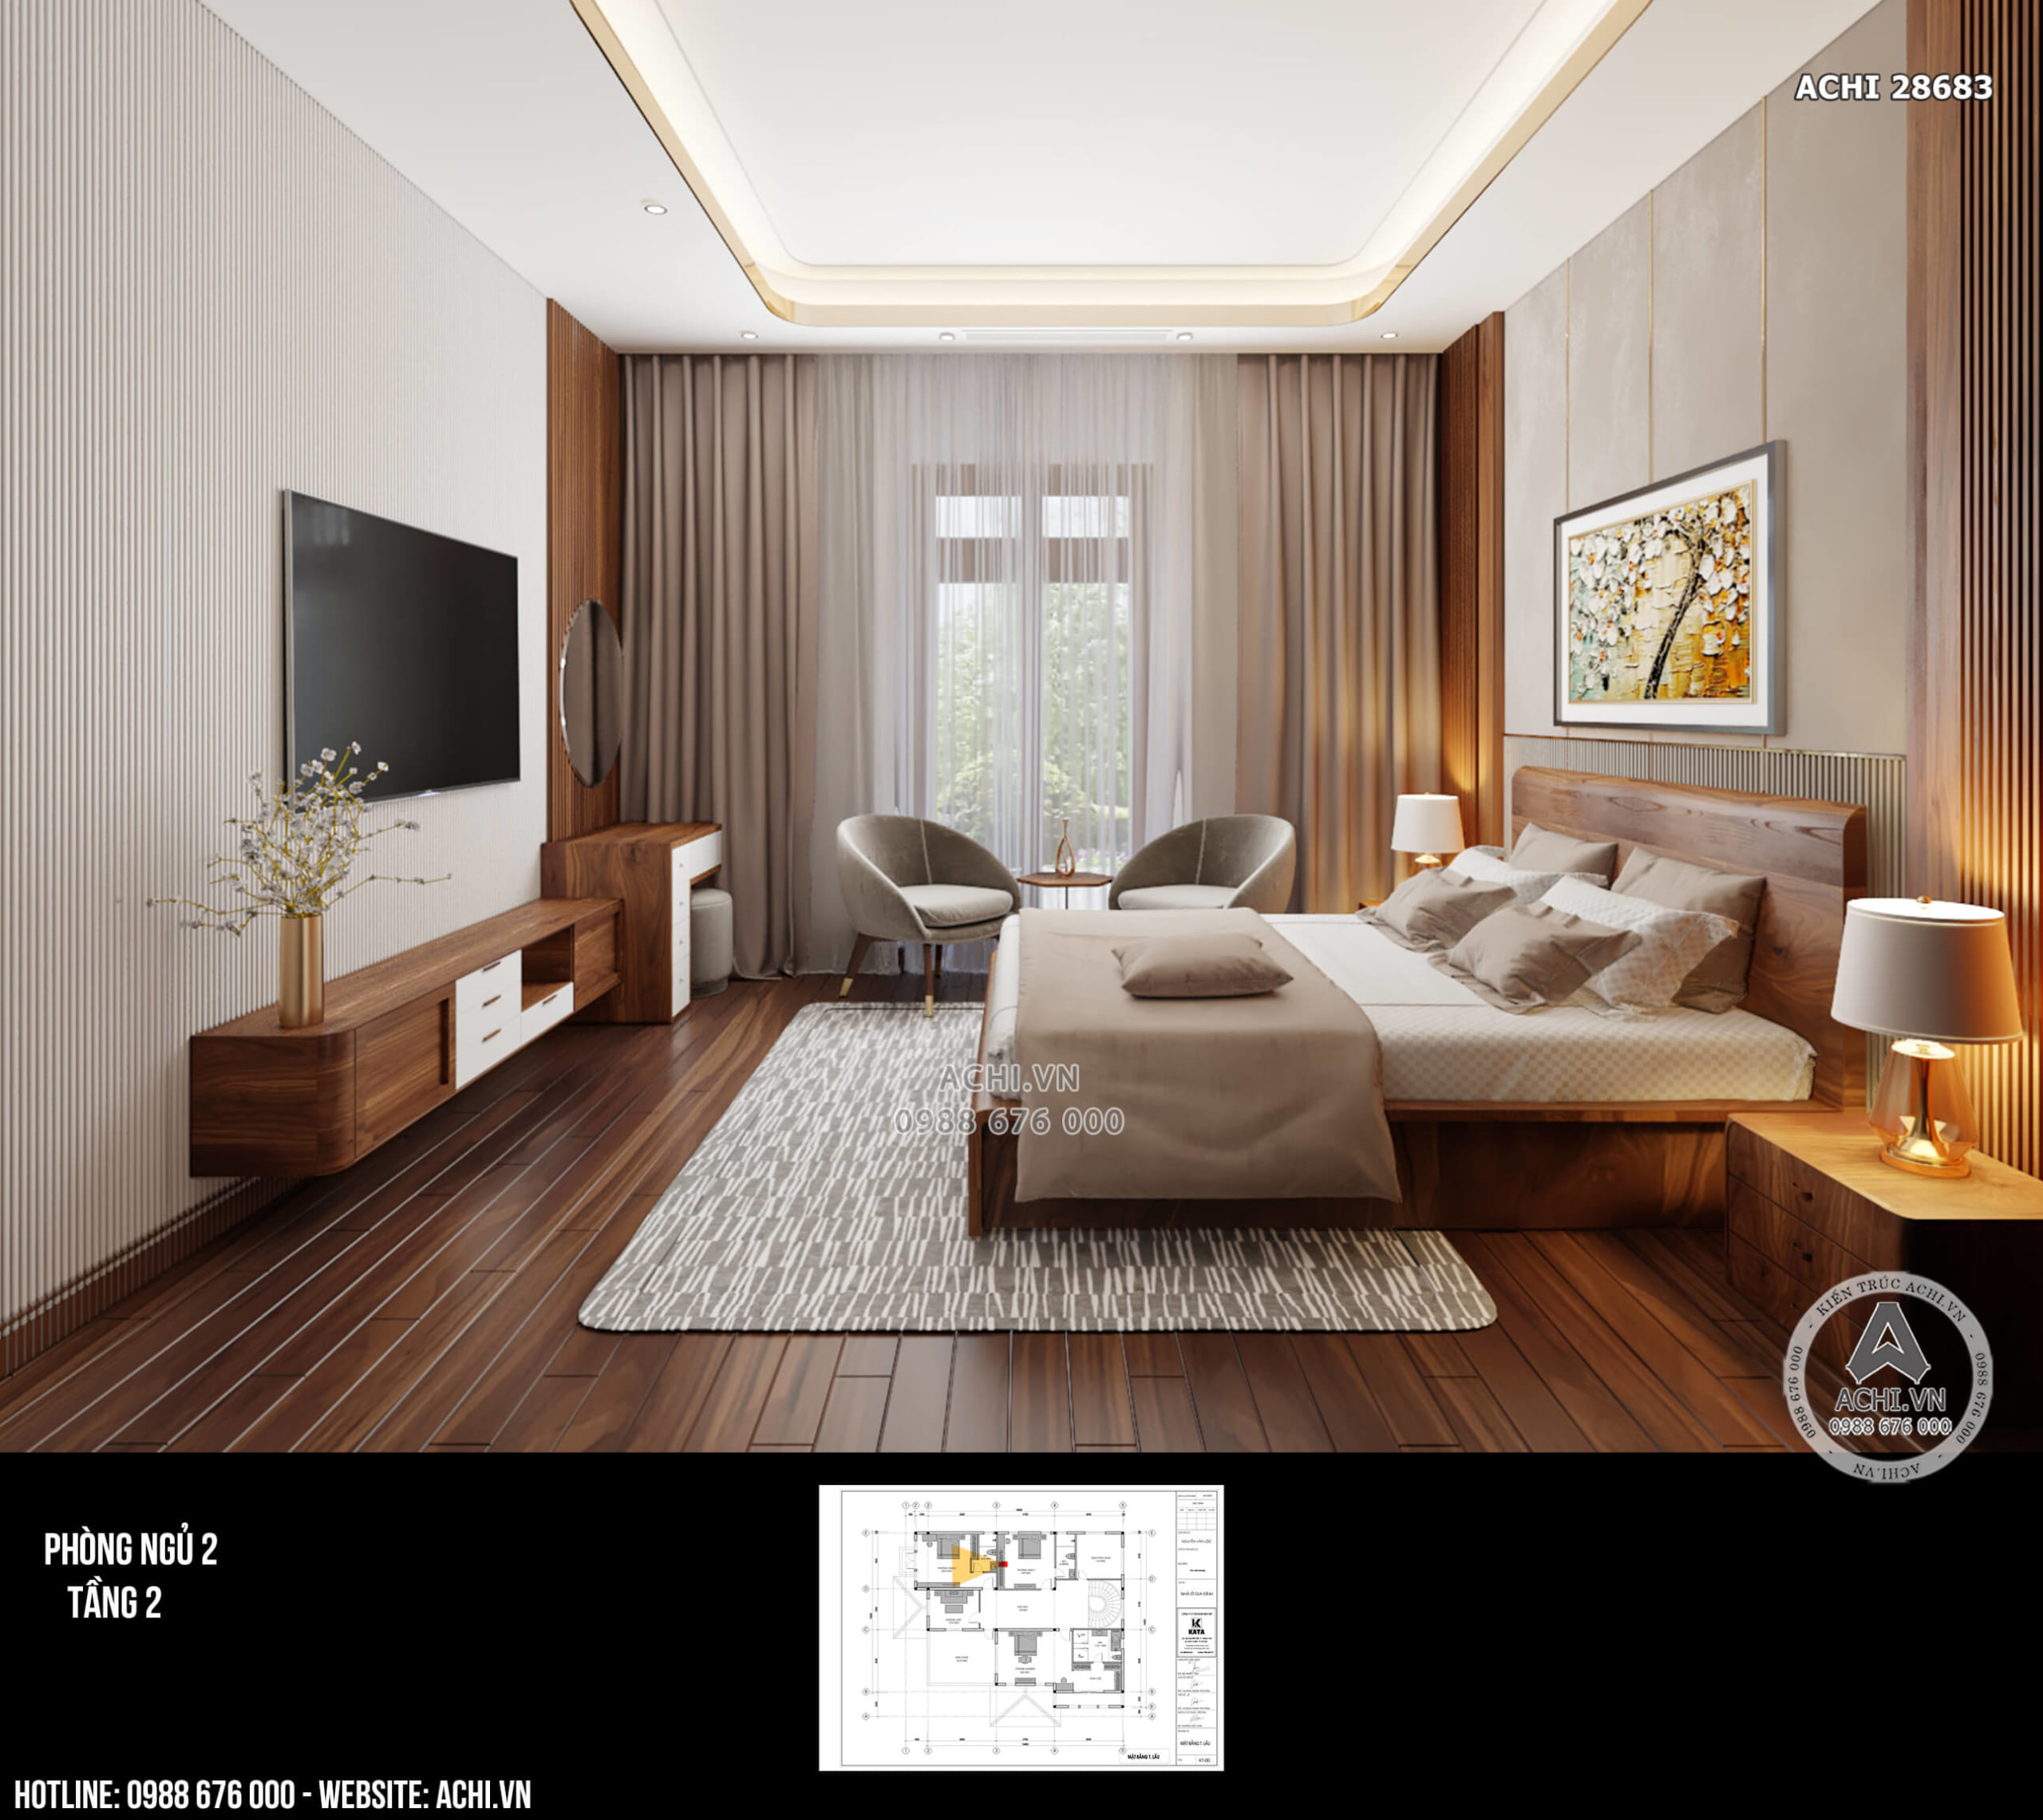 Nội thất phòng ngủ mẫu biệt thự mái nhật 2 tầng tại Kiên Giang